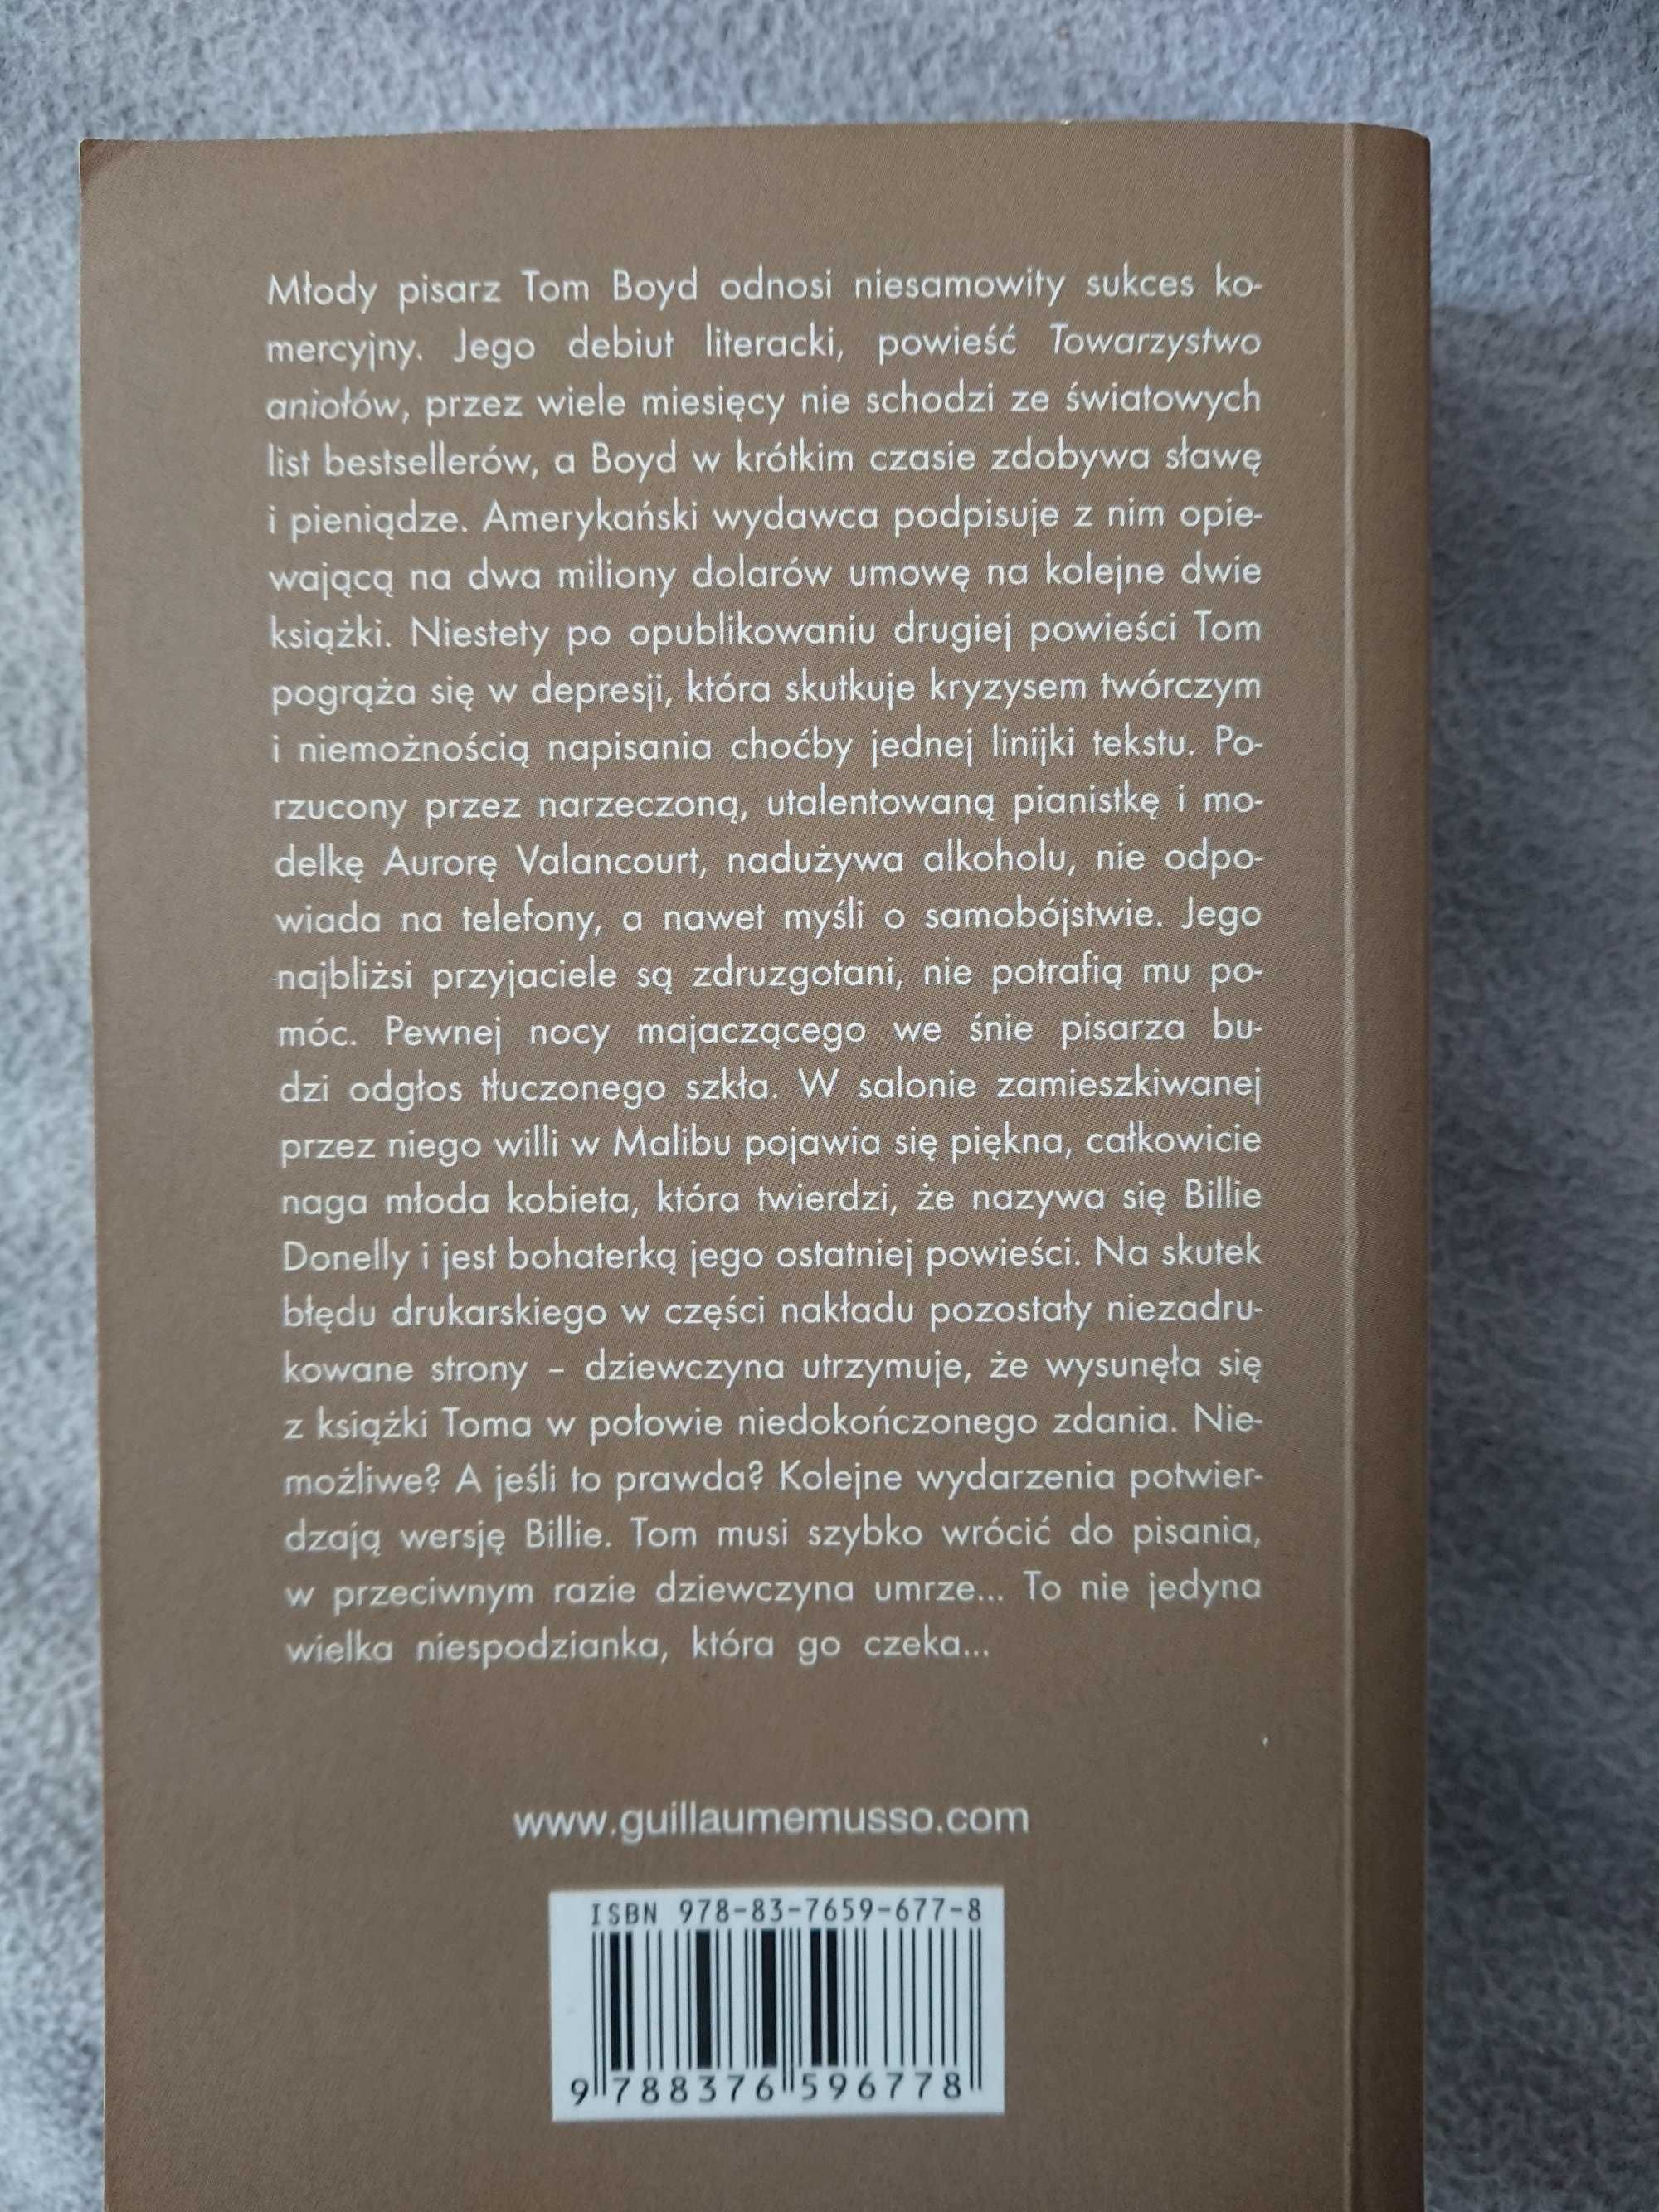 Używana książka papierowa dziewczyna guillaume musso